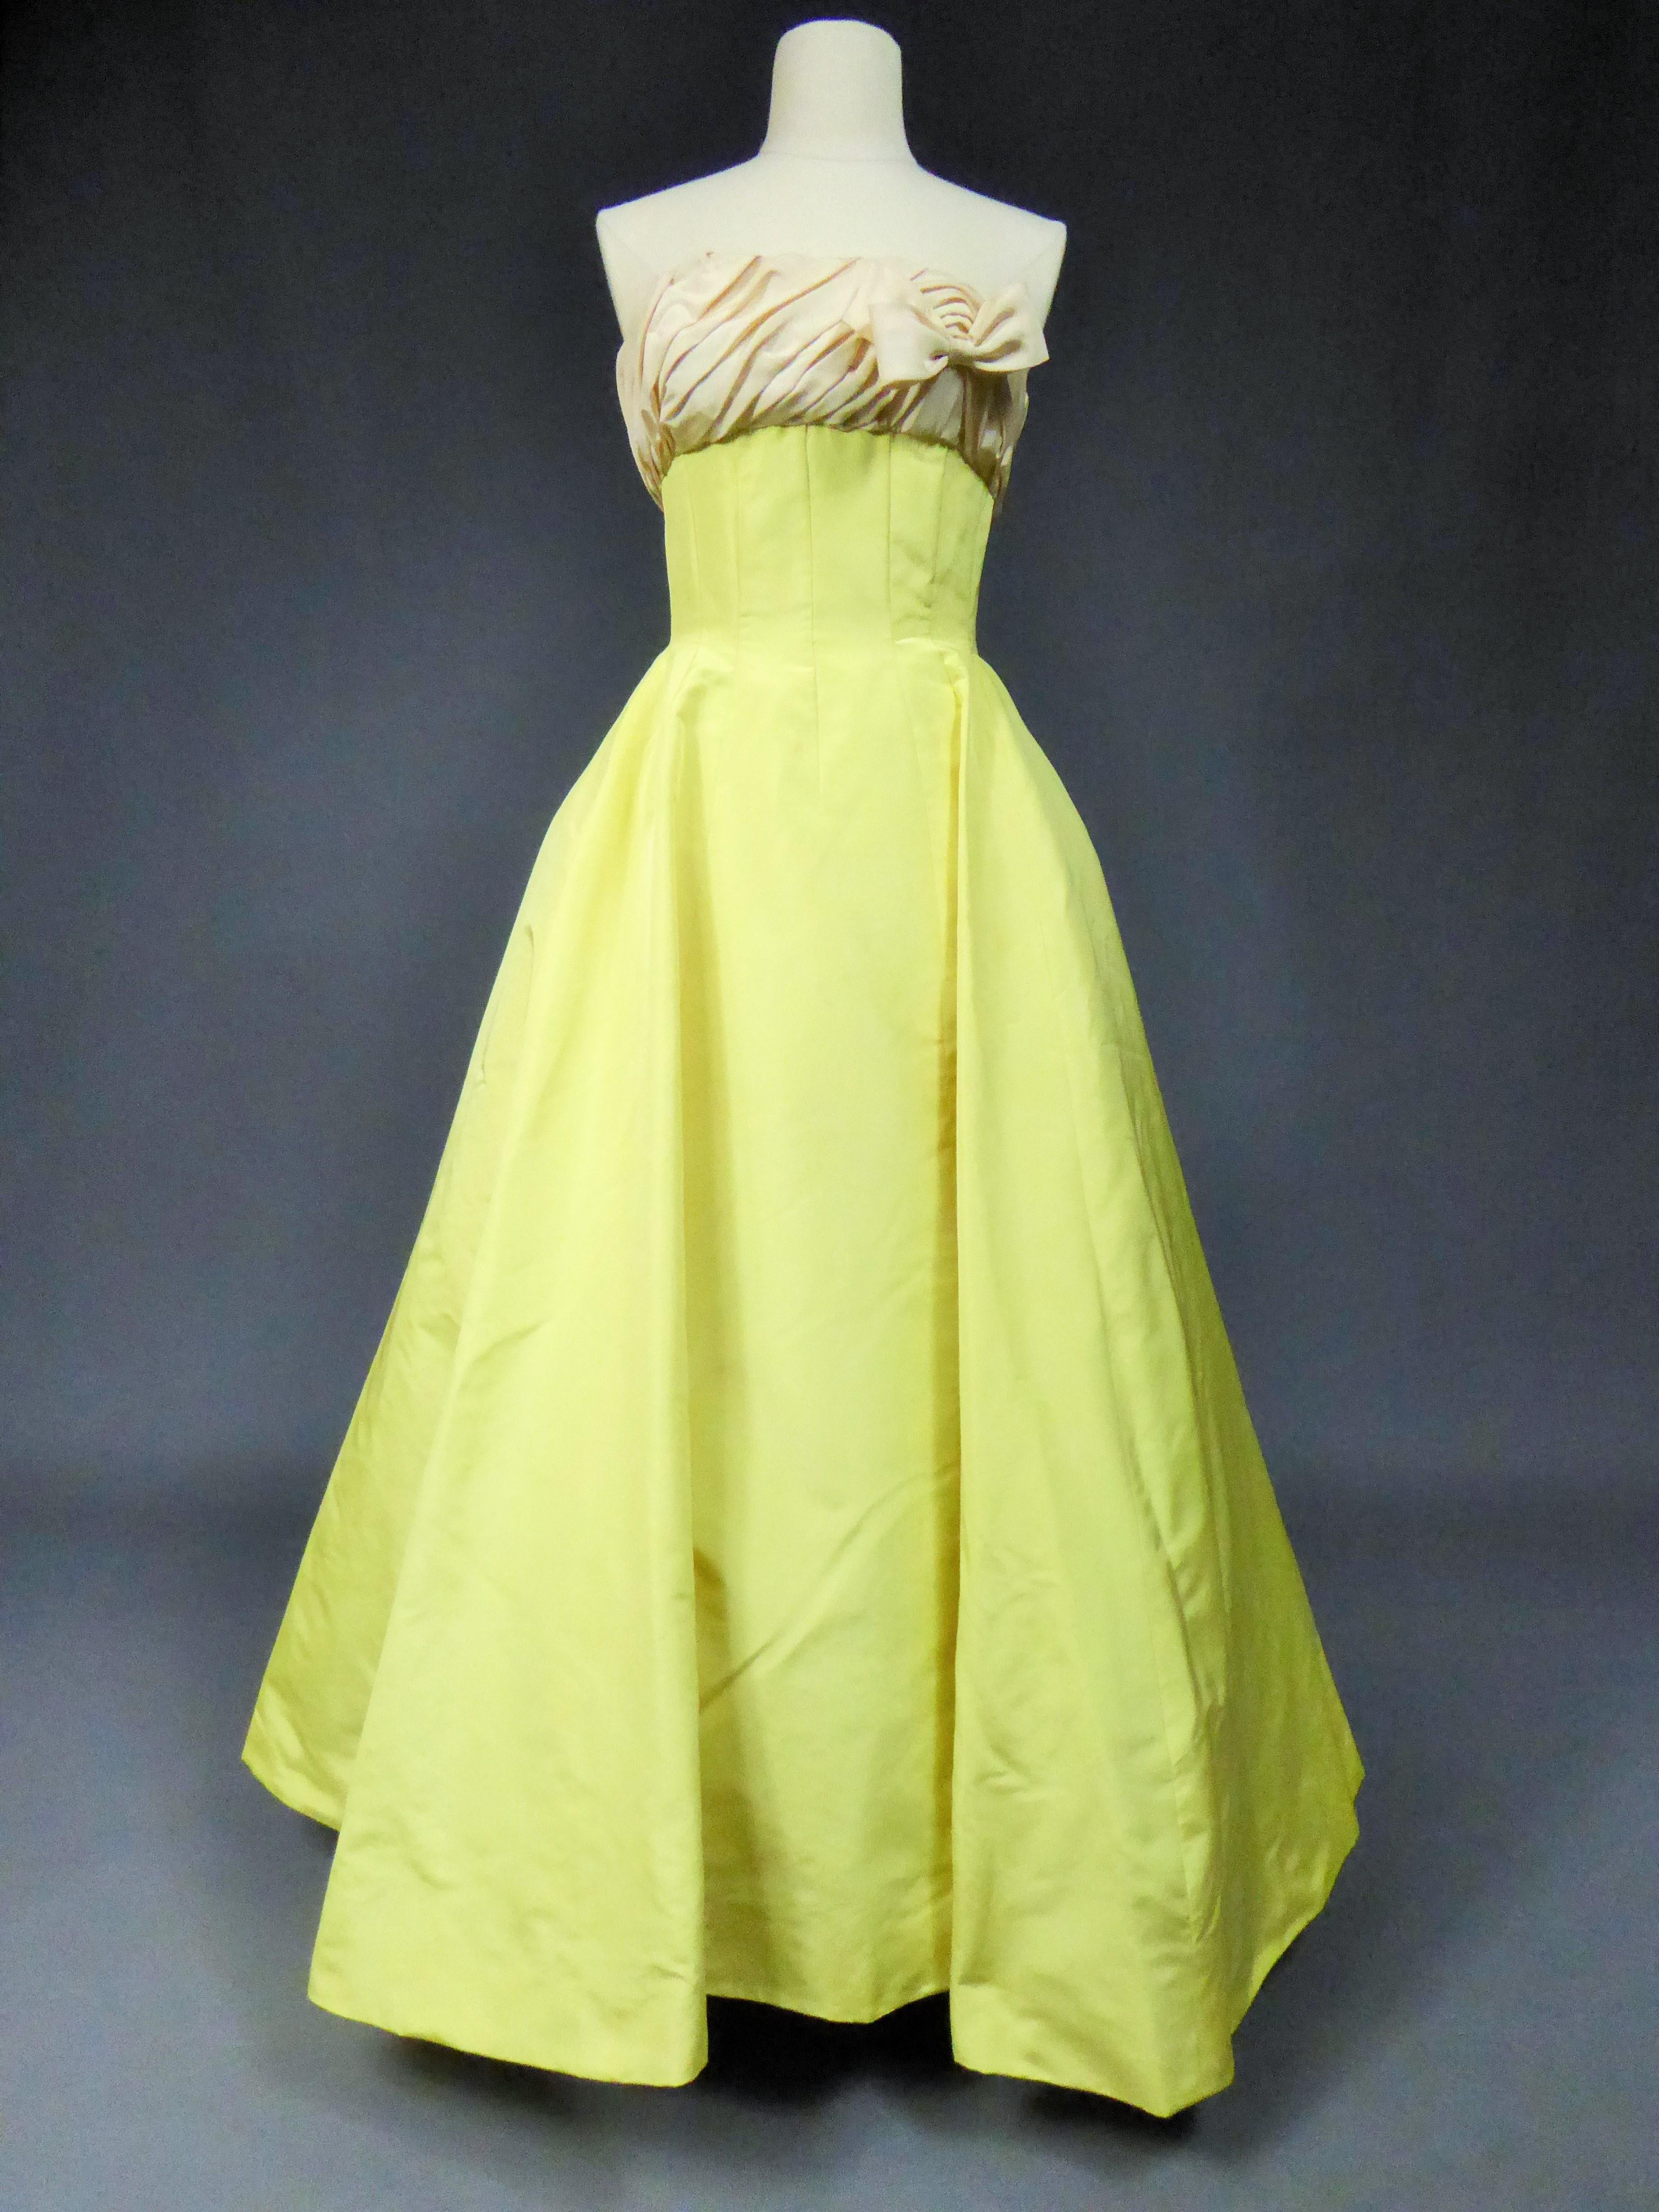 A Pierre Balmain Ottoman Silk Faille Couture Ball-Gown N° 83213 Paris Circa 1958 For Sale 2